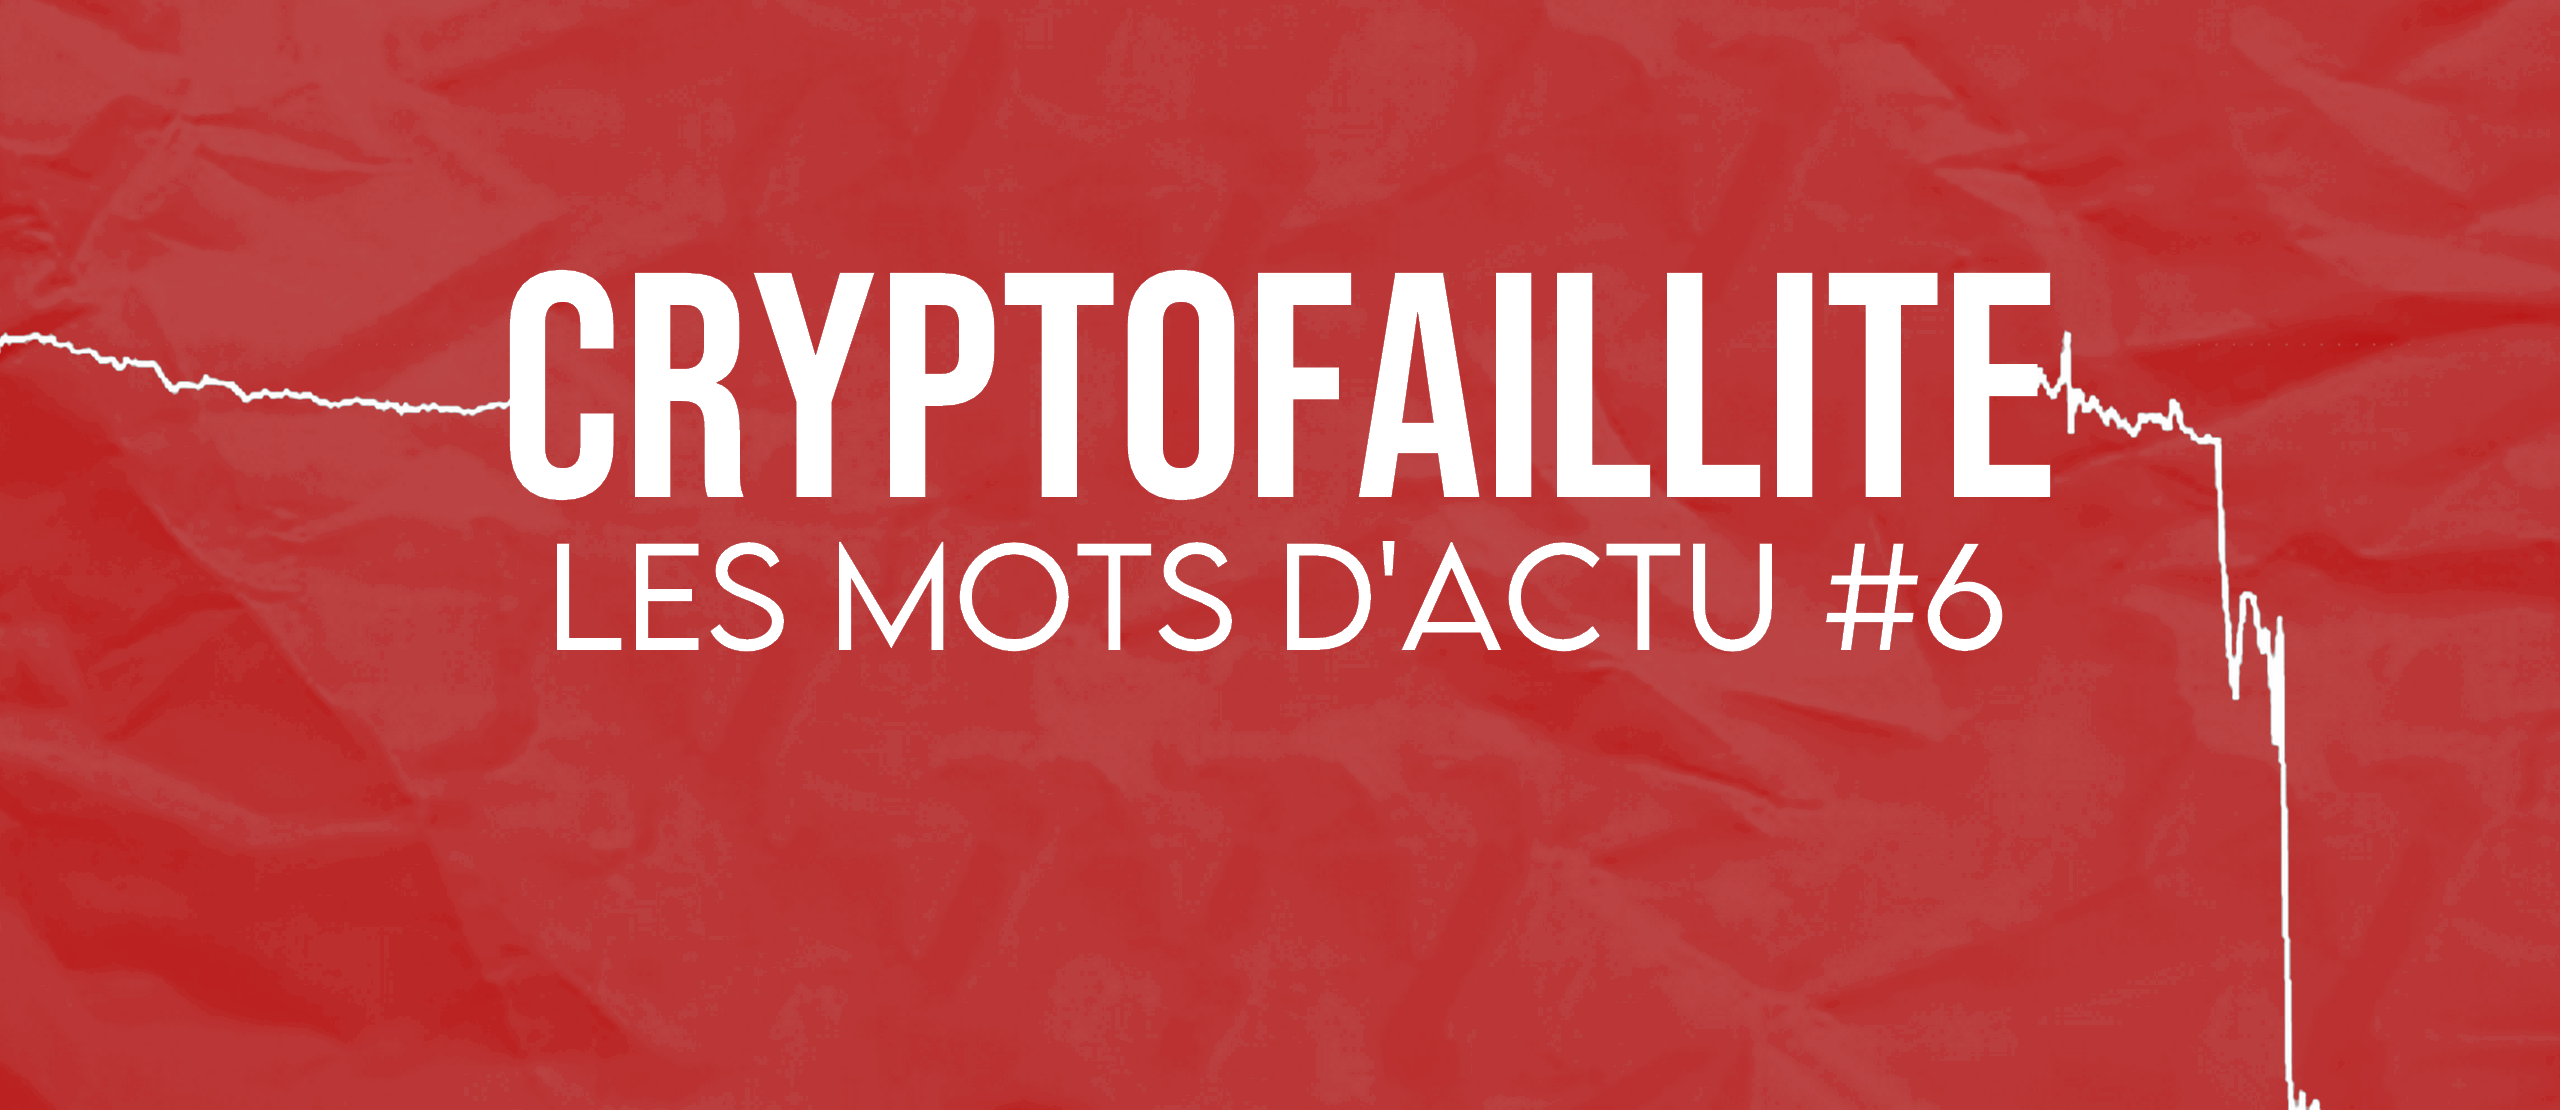 Image LES MOTS D'ACTU #6 : Cryptofaillite